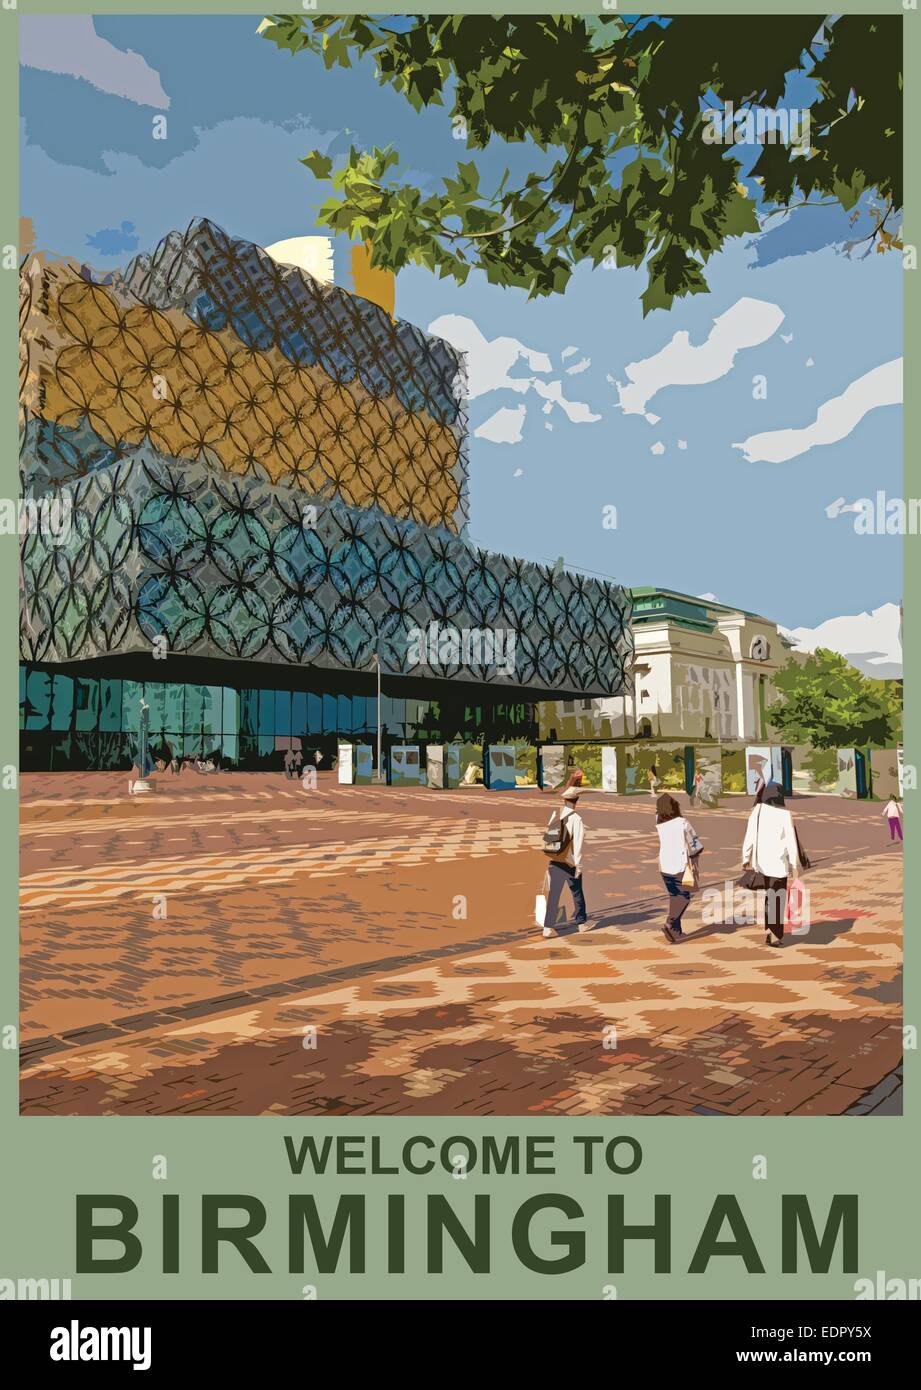 Ein Plakat Stil Abbildung der Library of Birmingham Stadtbibliothek, Birmingham, England, UK Stockfoto